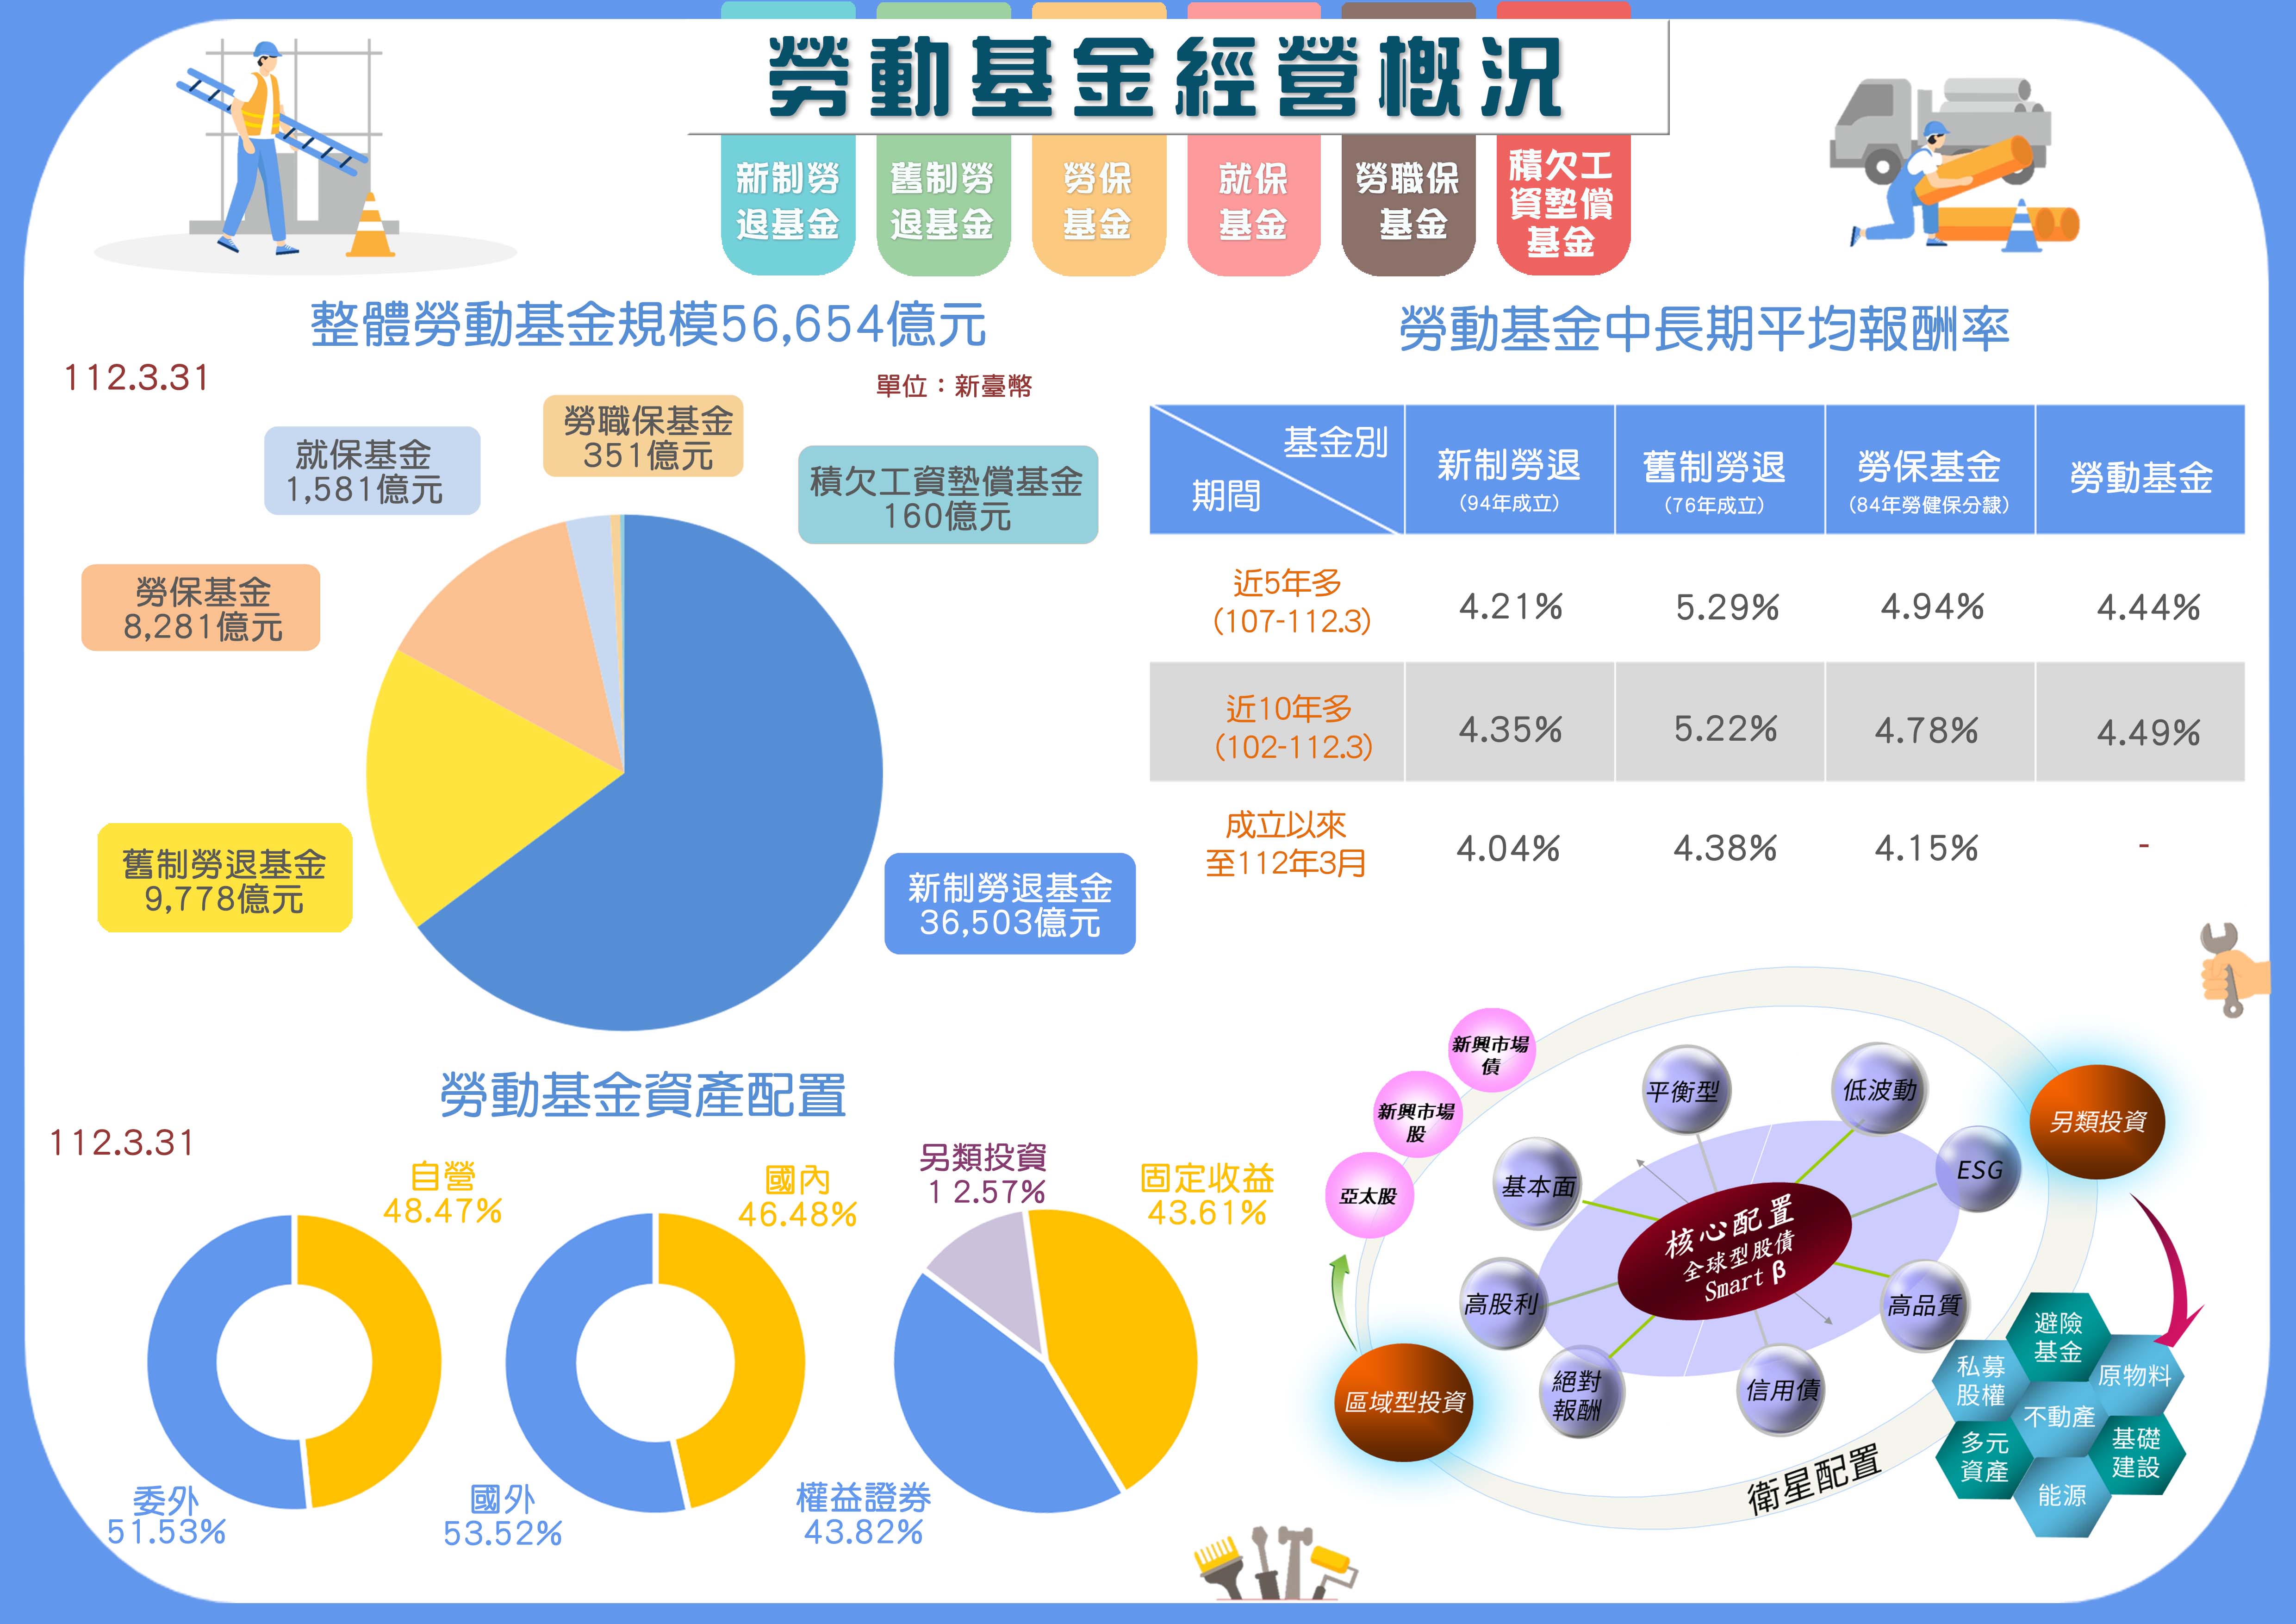 Infographic(11203)中文